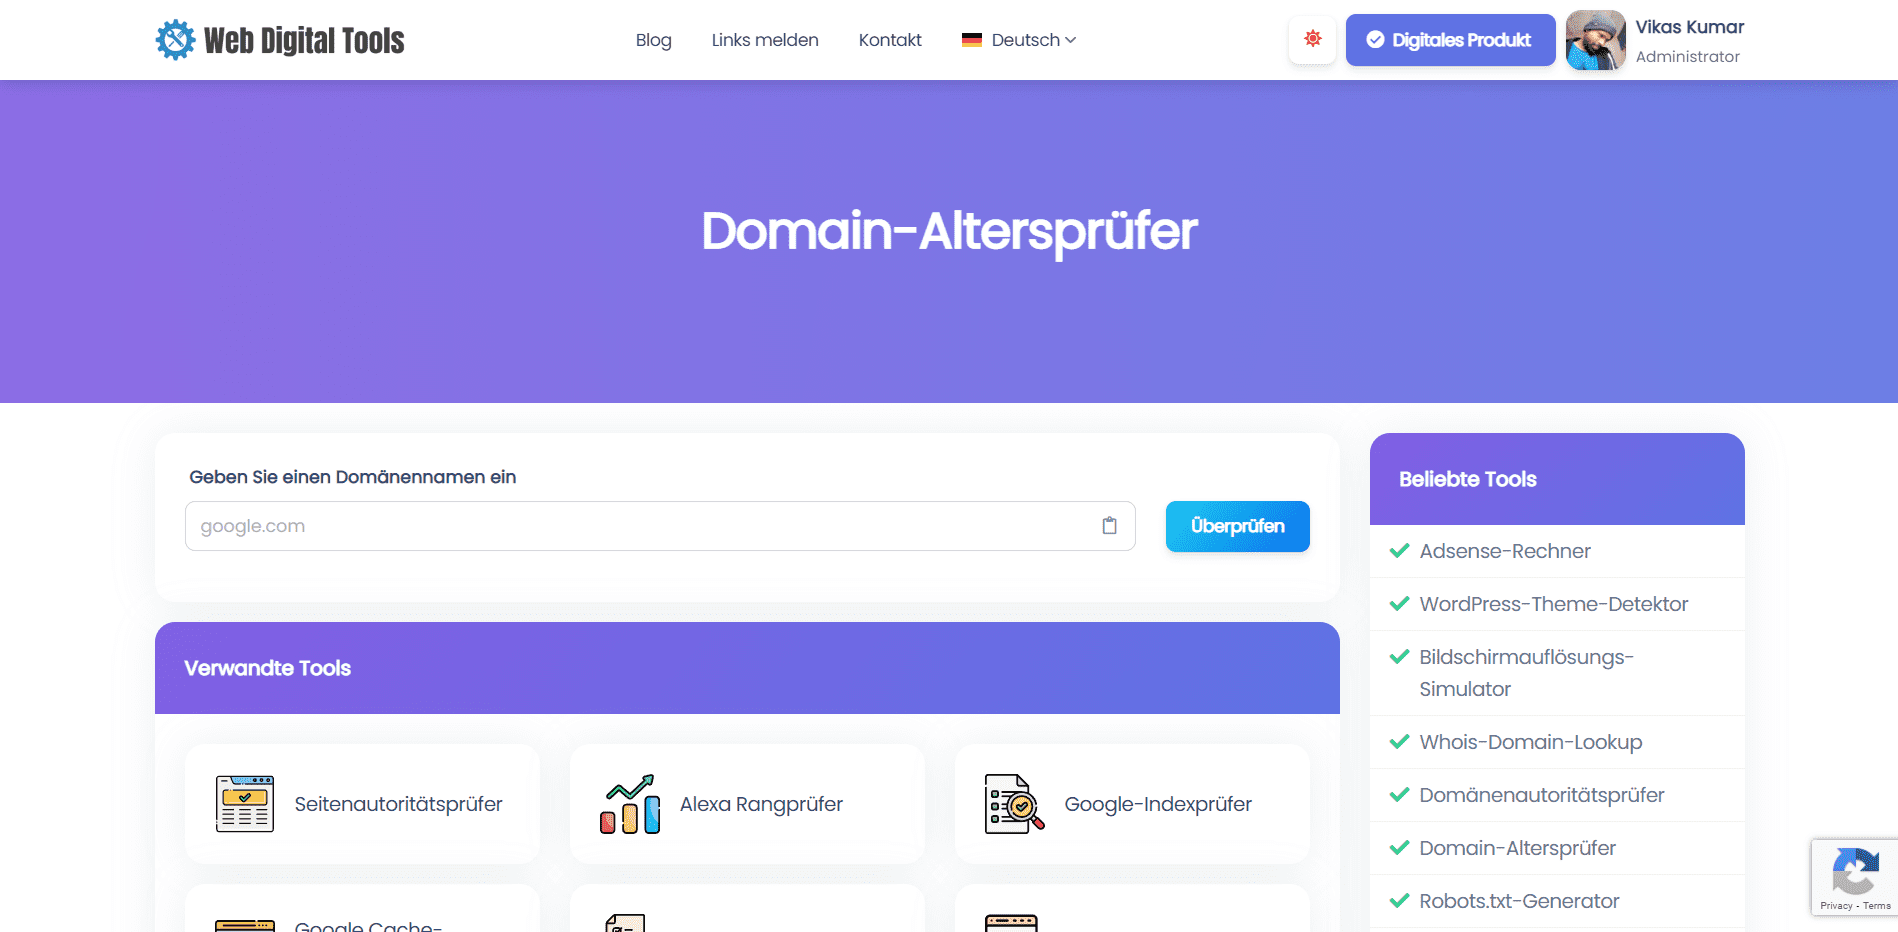 Domain-Altersprüfer